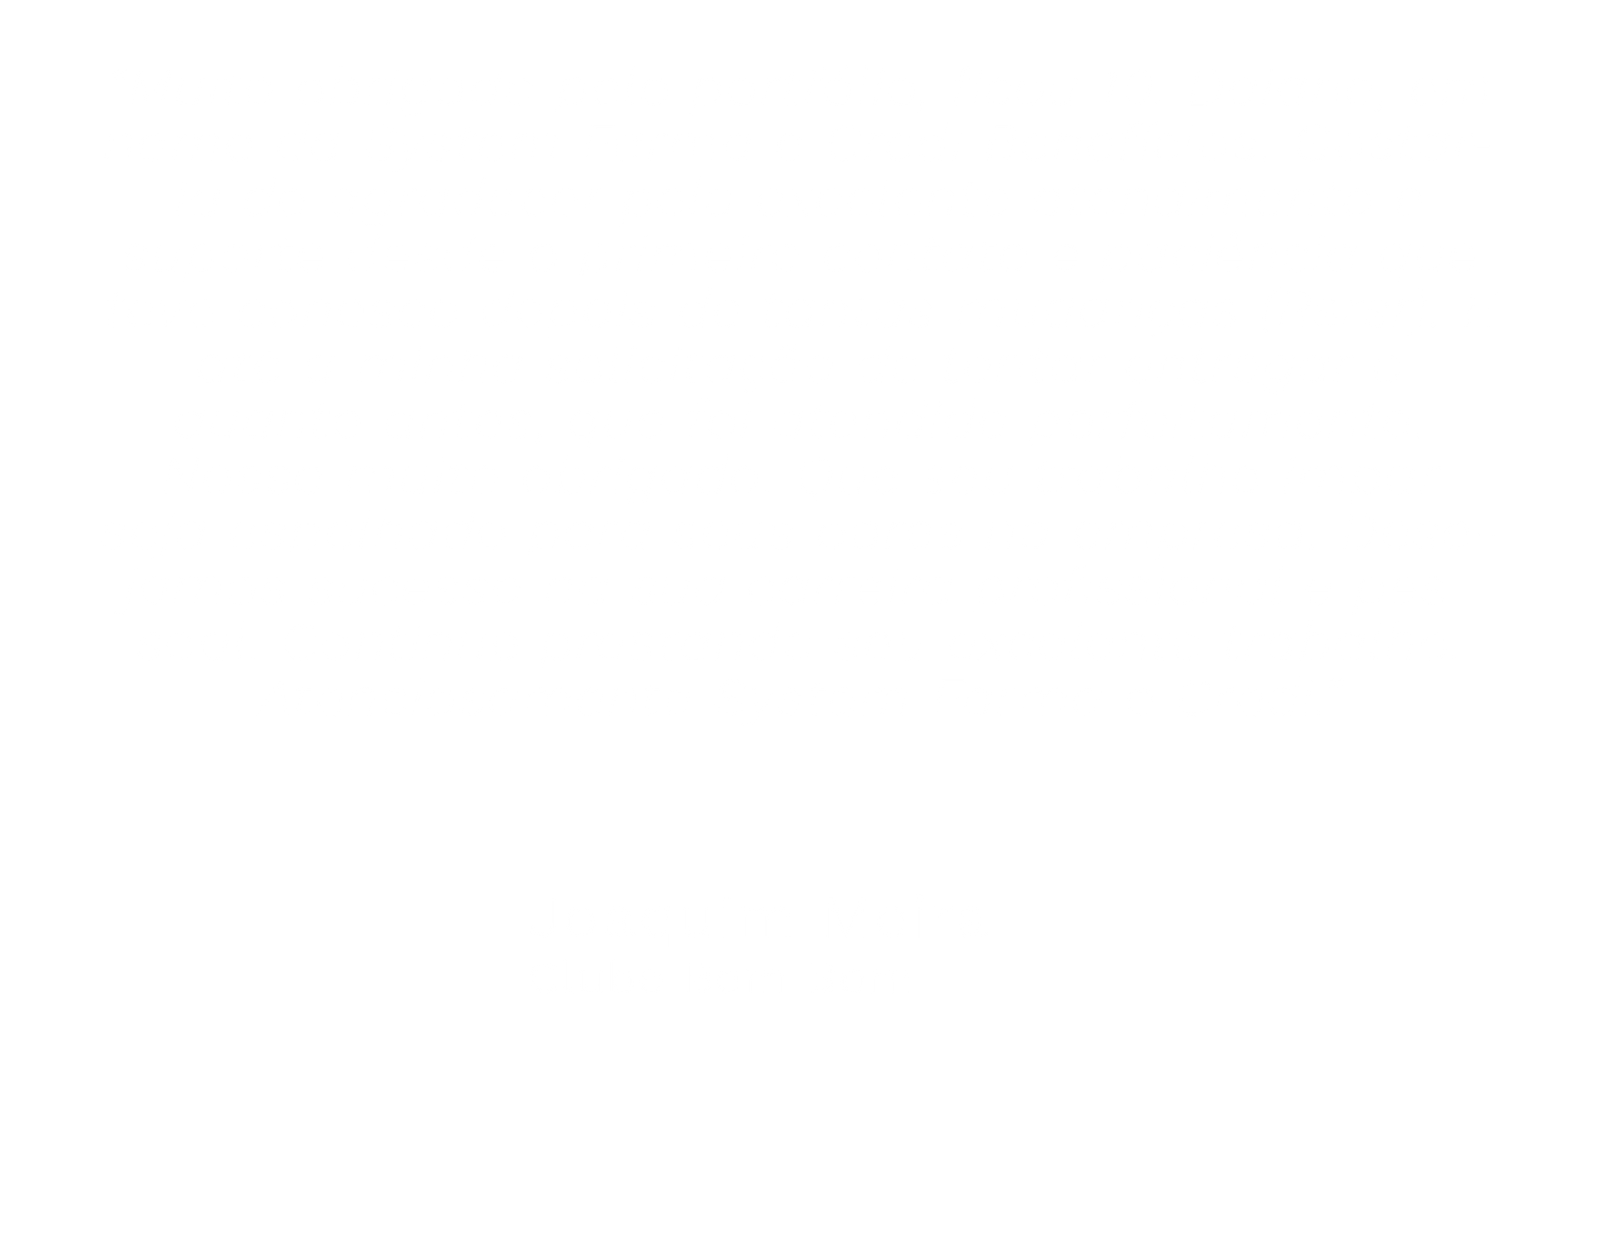 Joaquim-Meira-Clube-Bem-Bom.png